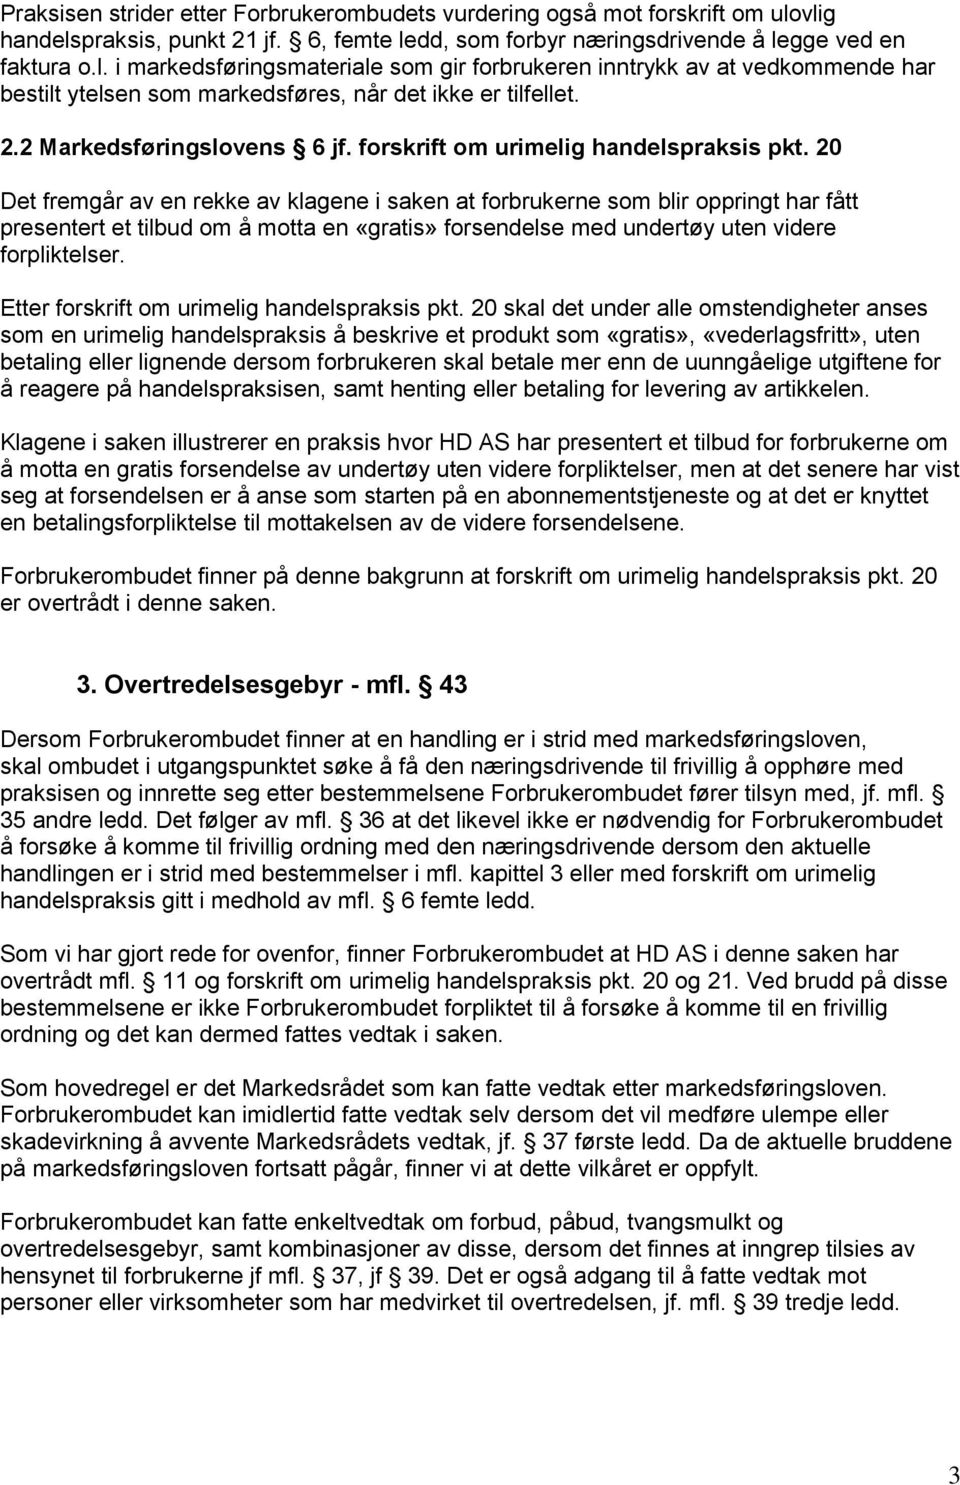 2.2 Markedsføringslovens 6 jf. forskrift om urimelig handelspraksis pkt.